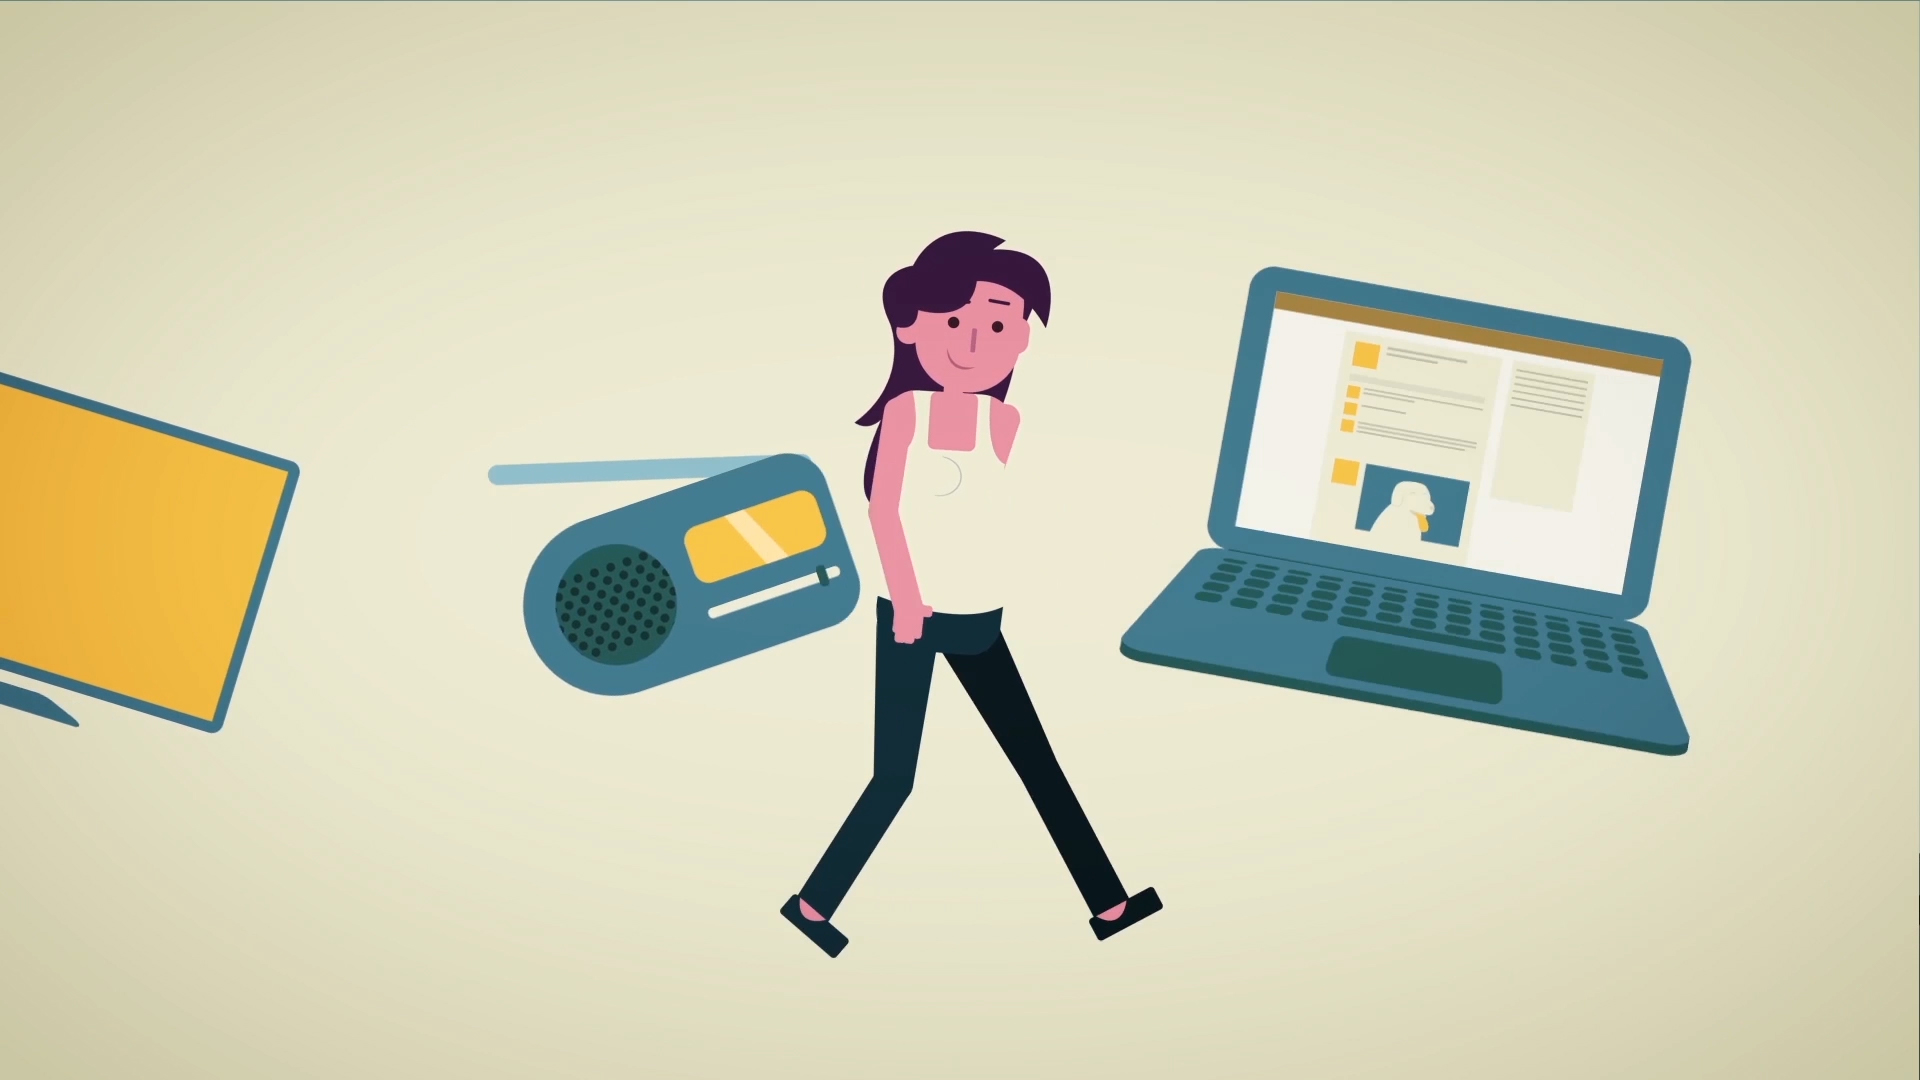 Ilustra��o de uma personagem feminina andando na frente de uma televis�o, um r�dio e um laptop notebook